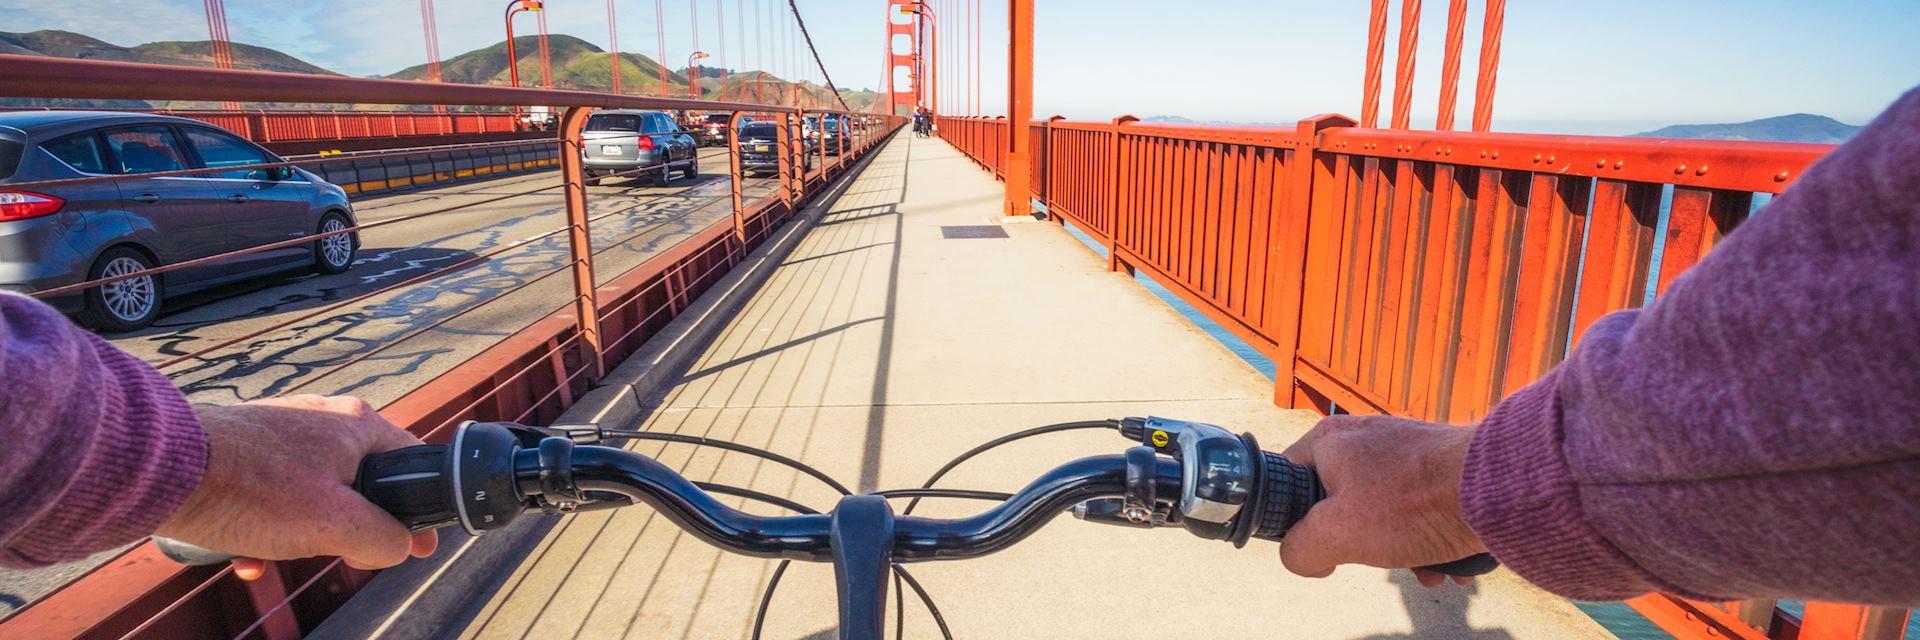 Cycling over the Golden Gate Bridge, San Francisco